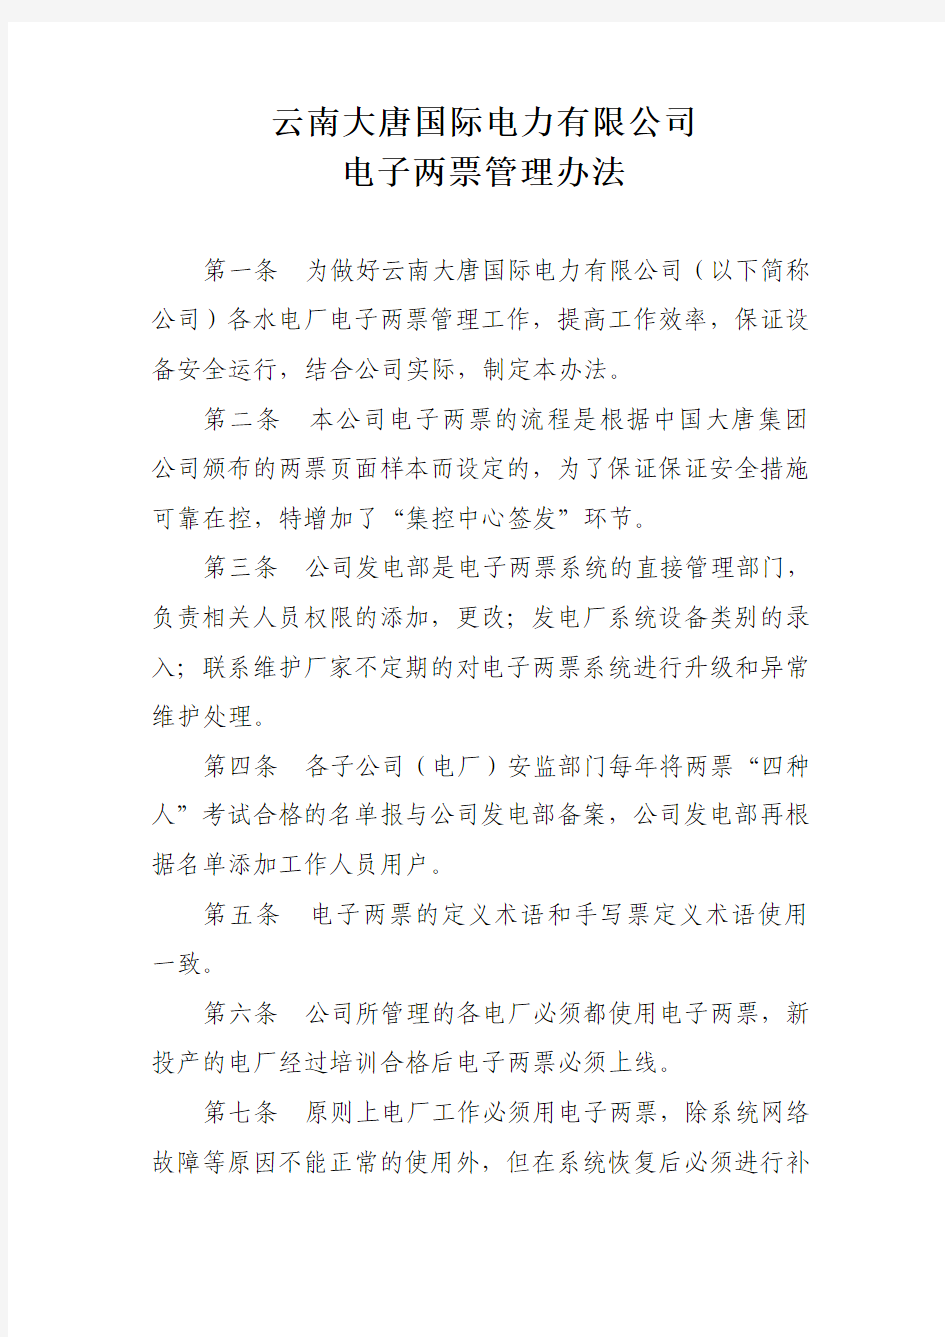 云南大唐国际电力有限公司电子两票管理办法